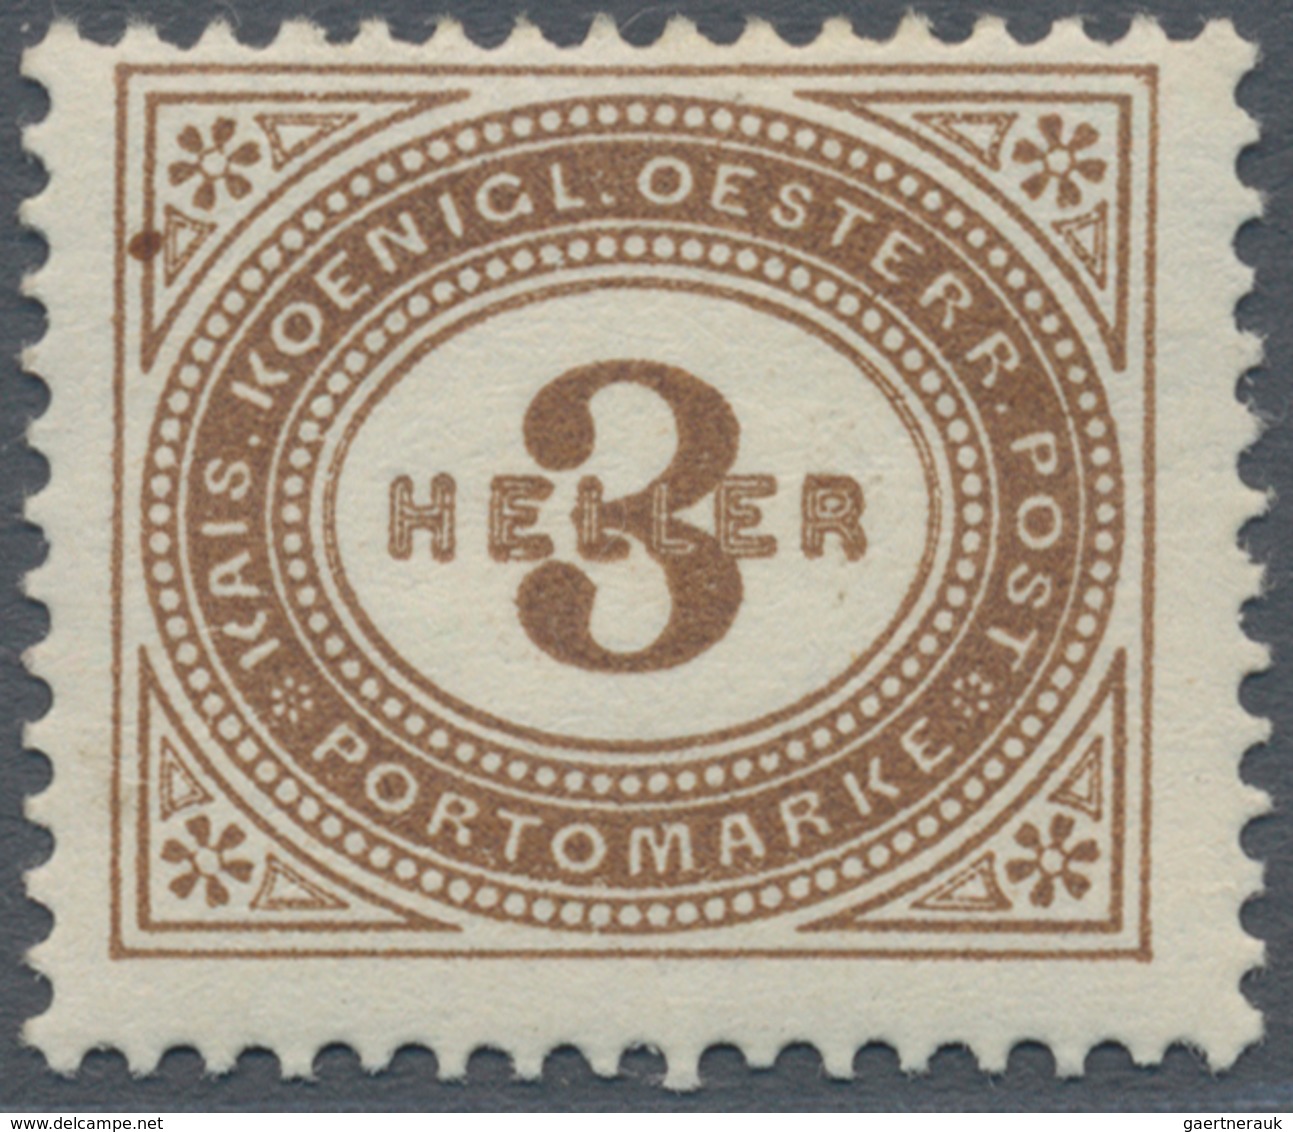 Österreich - Portomarken: 1900, 1 H. bis 100 H. in Kammzähnung und in Linienzähnung L 10½, zwei komp